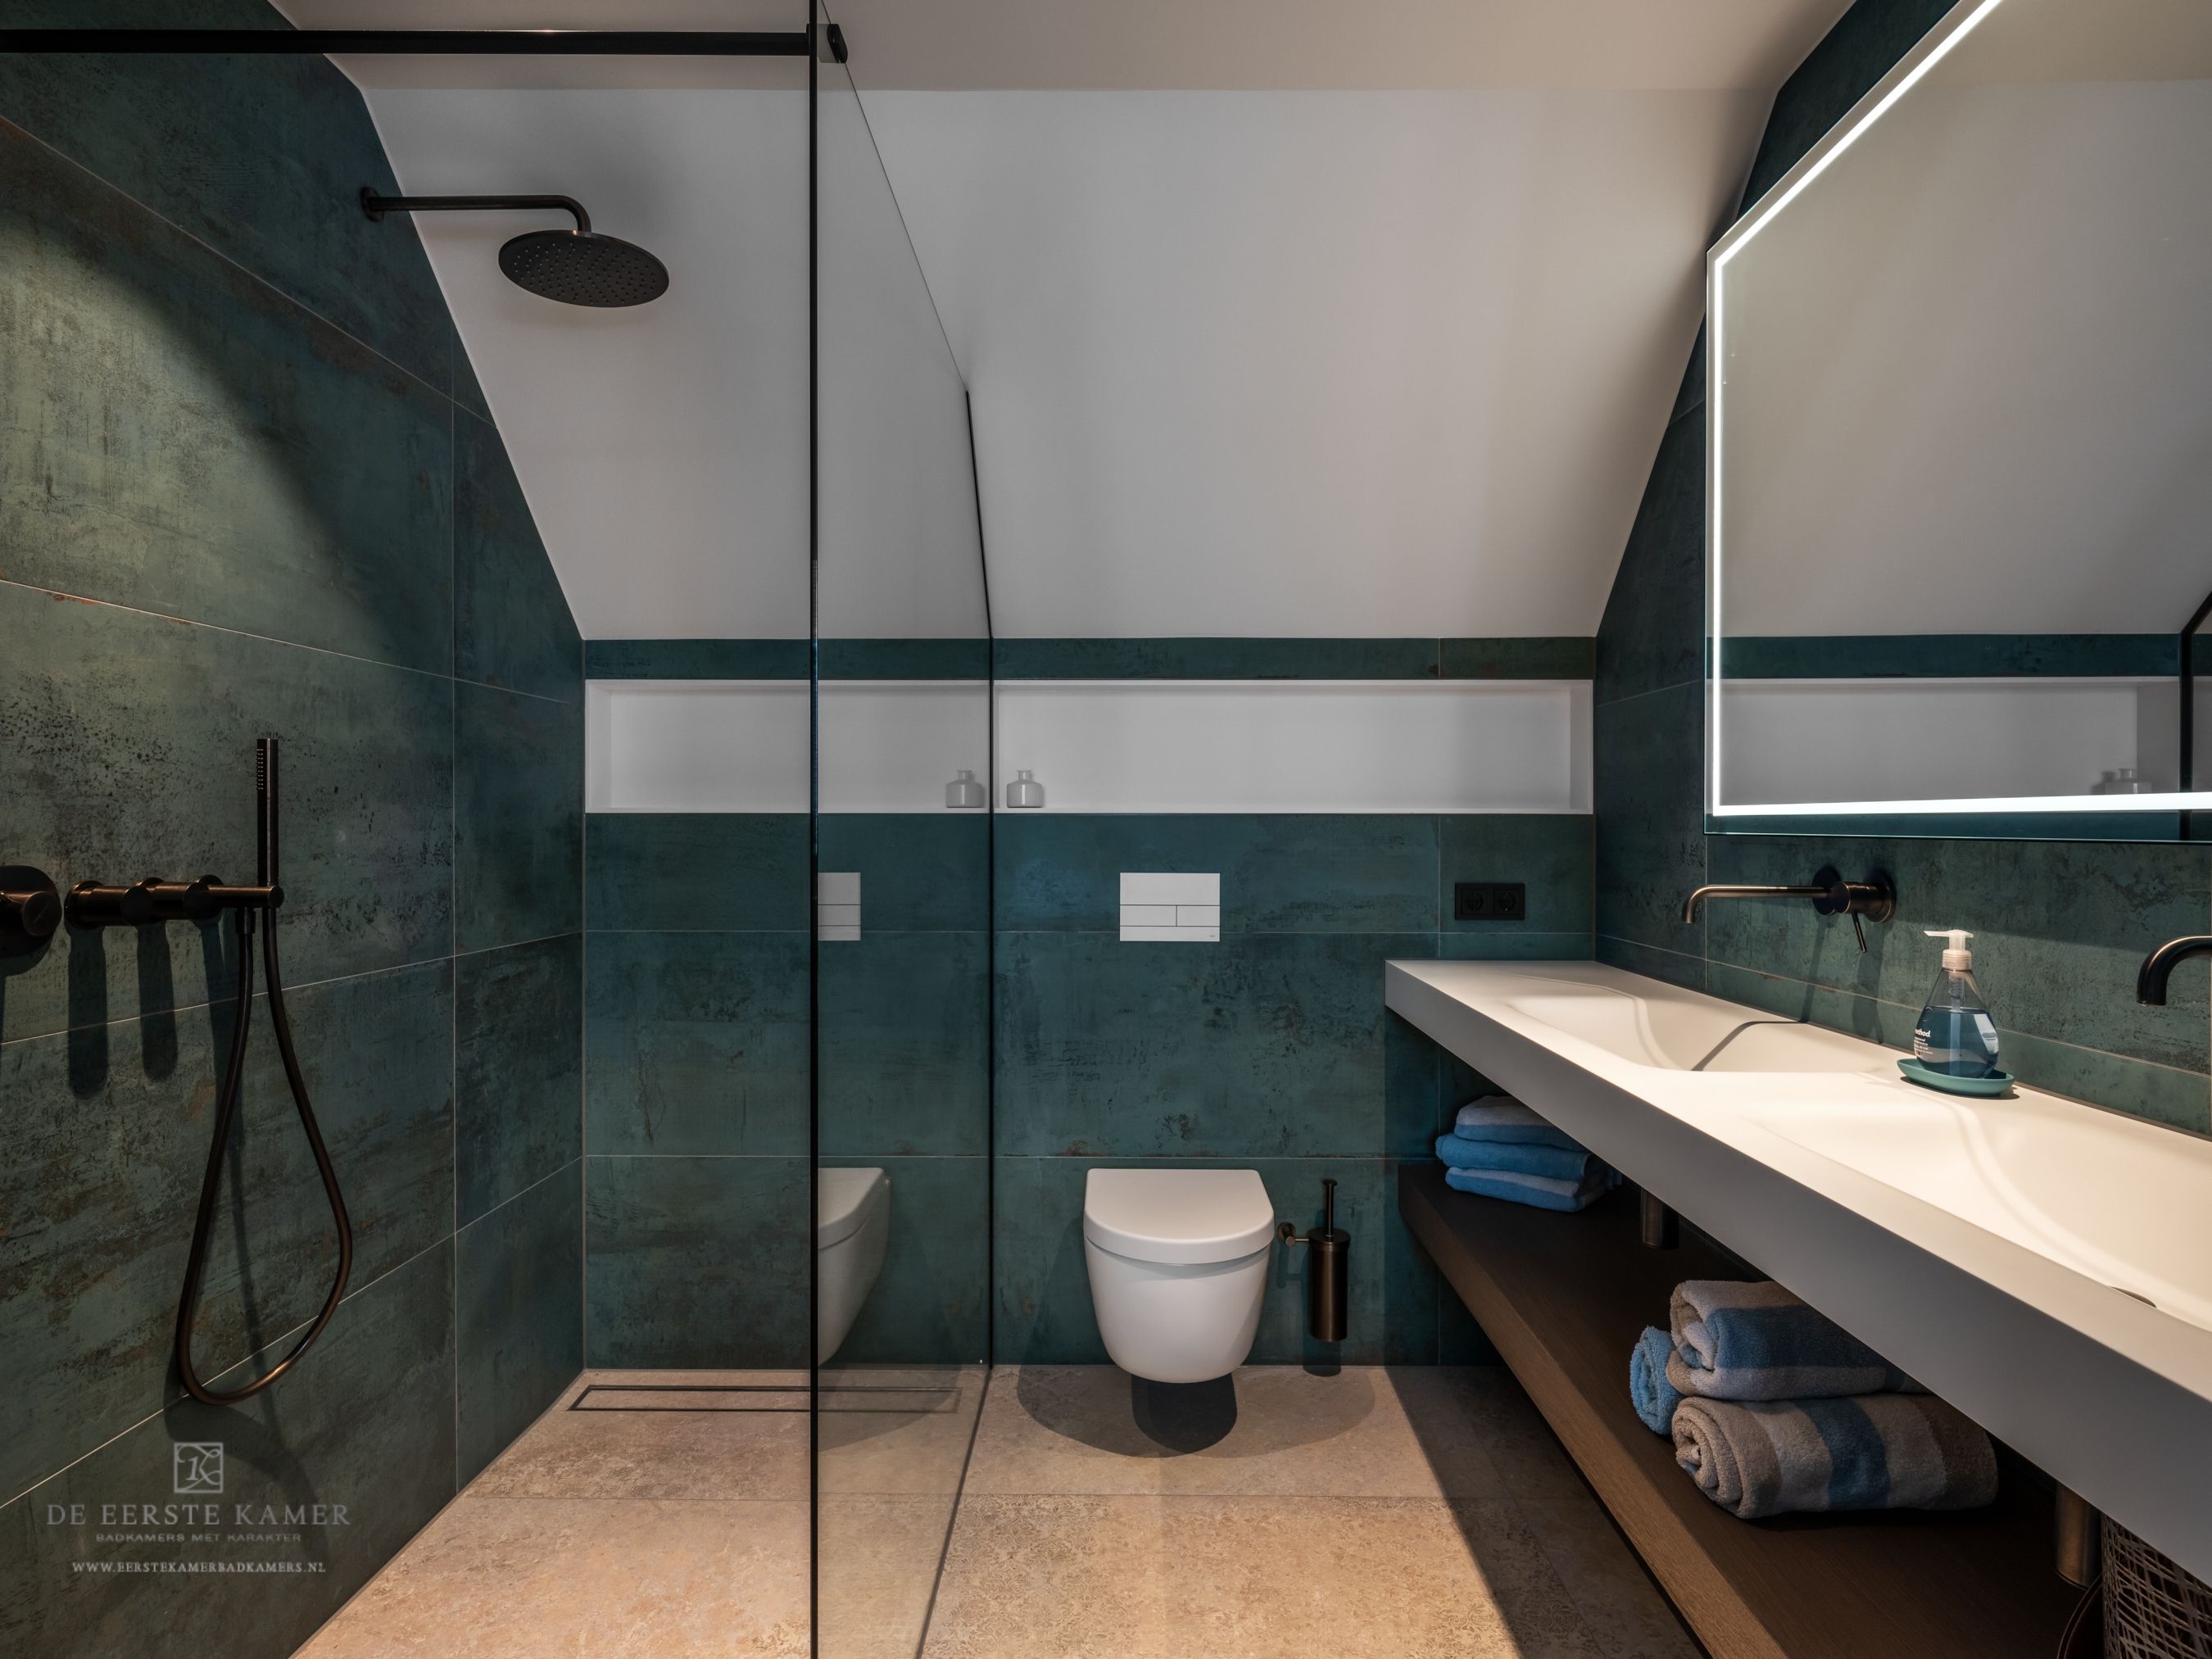 Foto: Gastenbadkamer  groene en zand DEK tegels